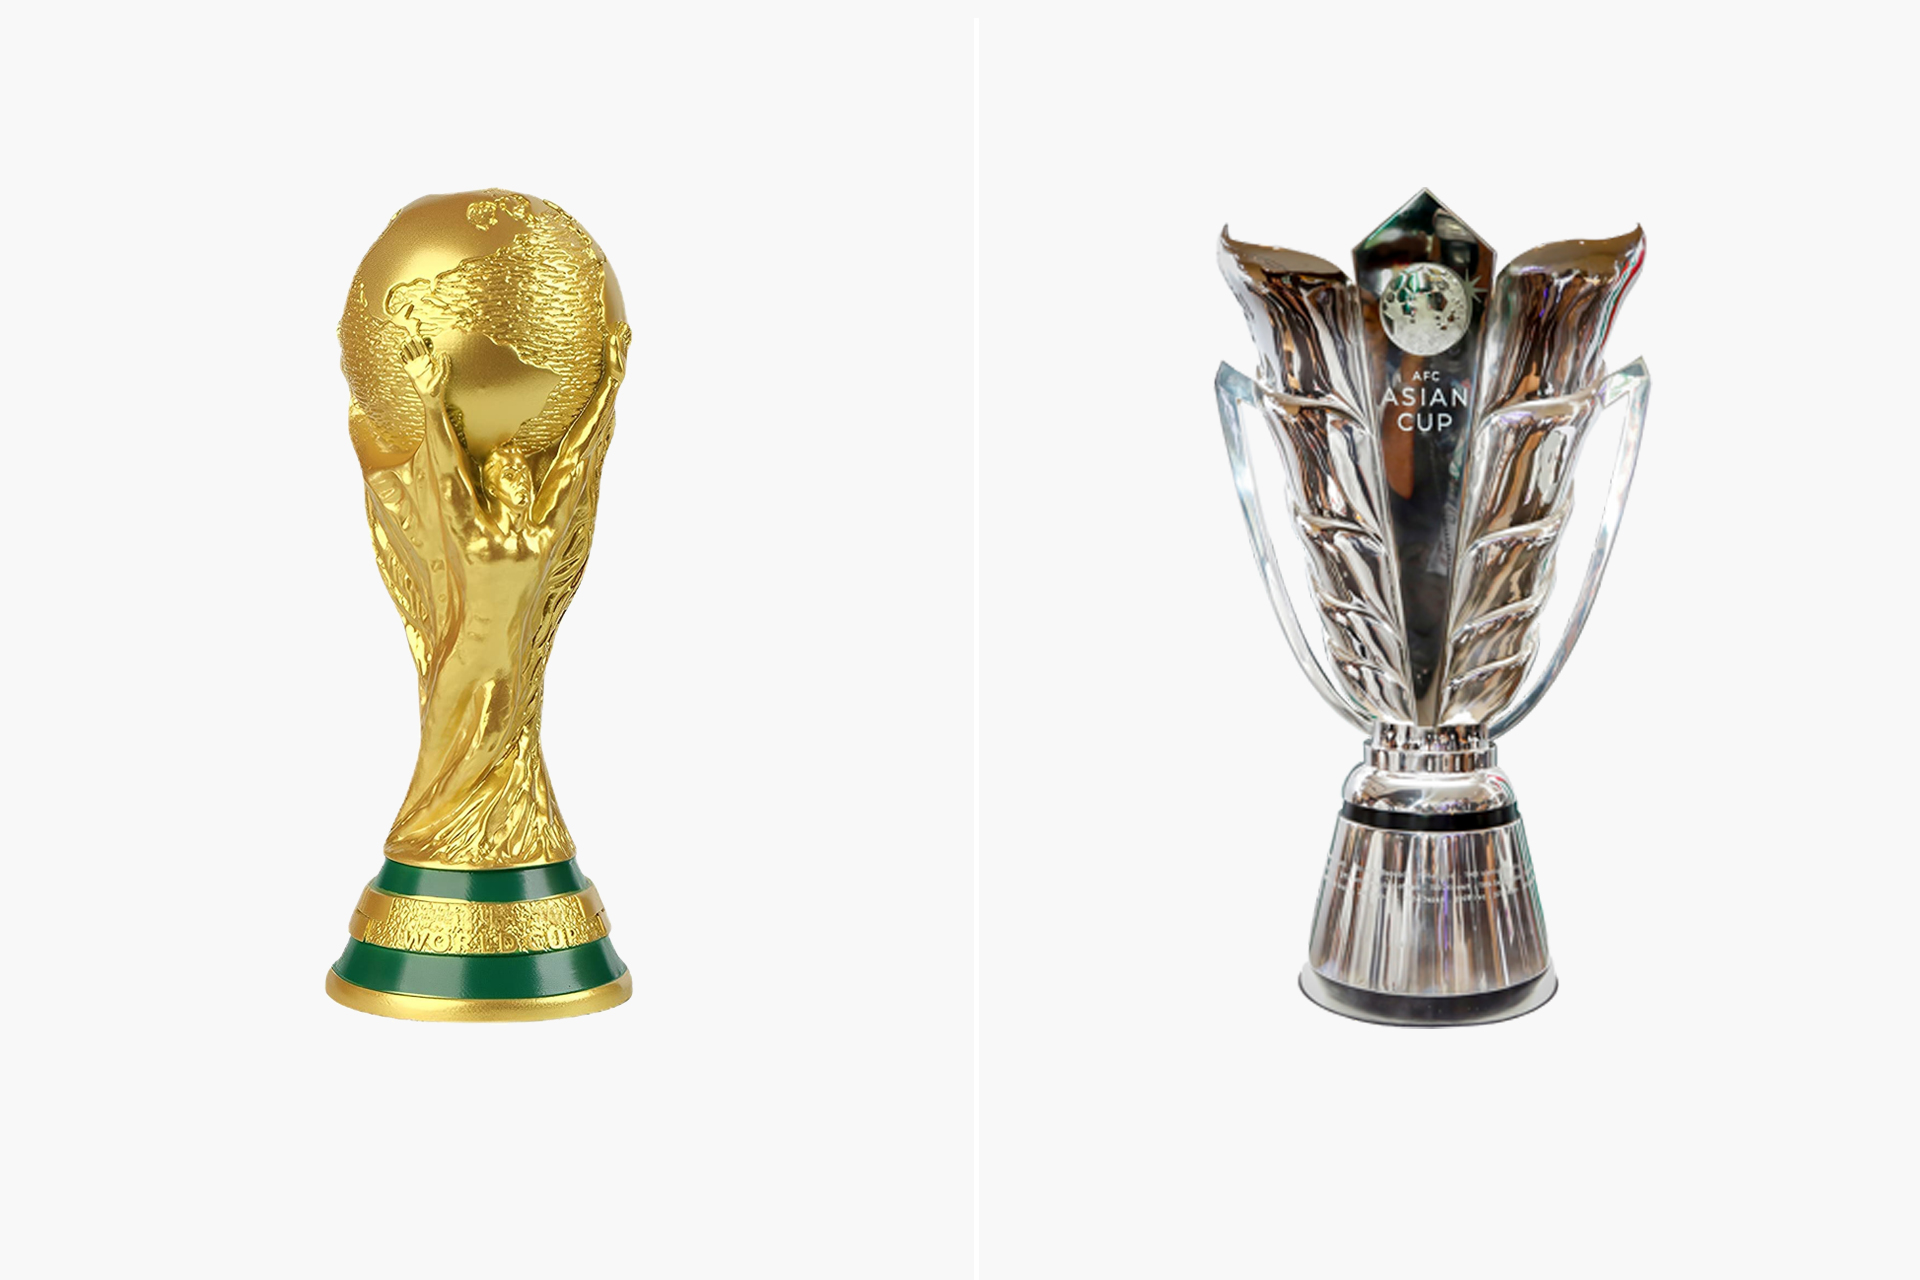 Calendrier des éliminatoires pour le Mondial 2026 et Coupe d'Asie